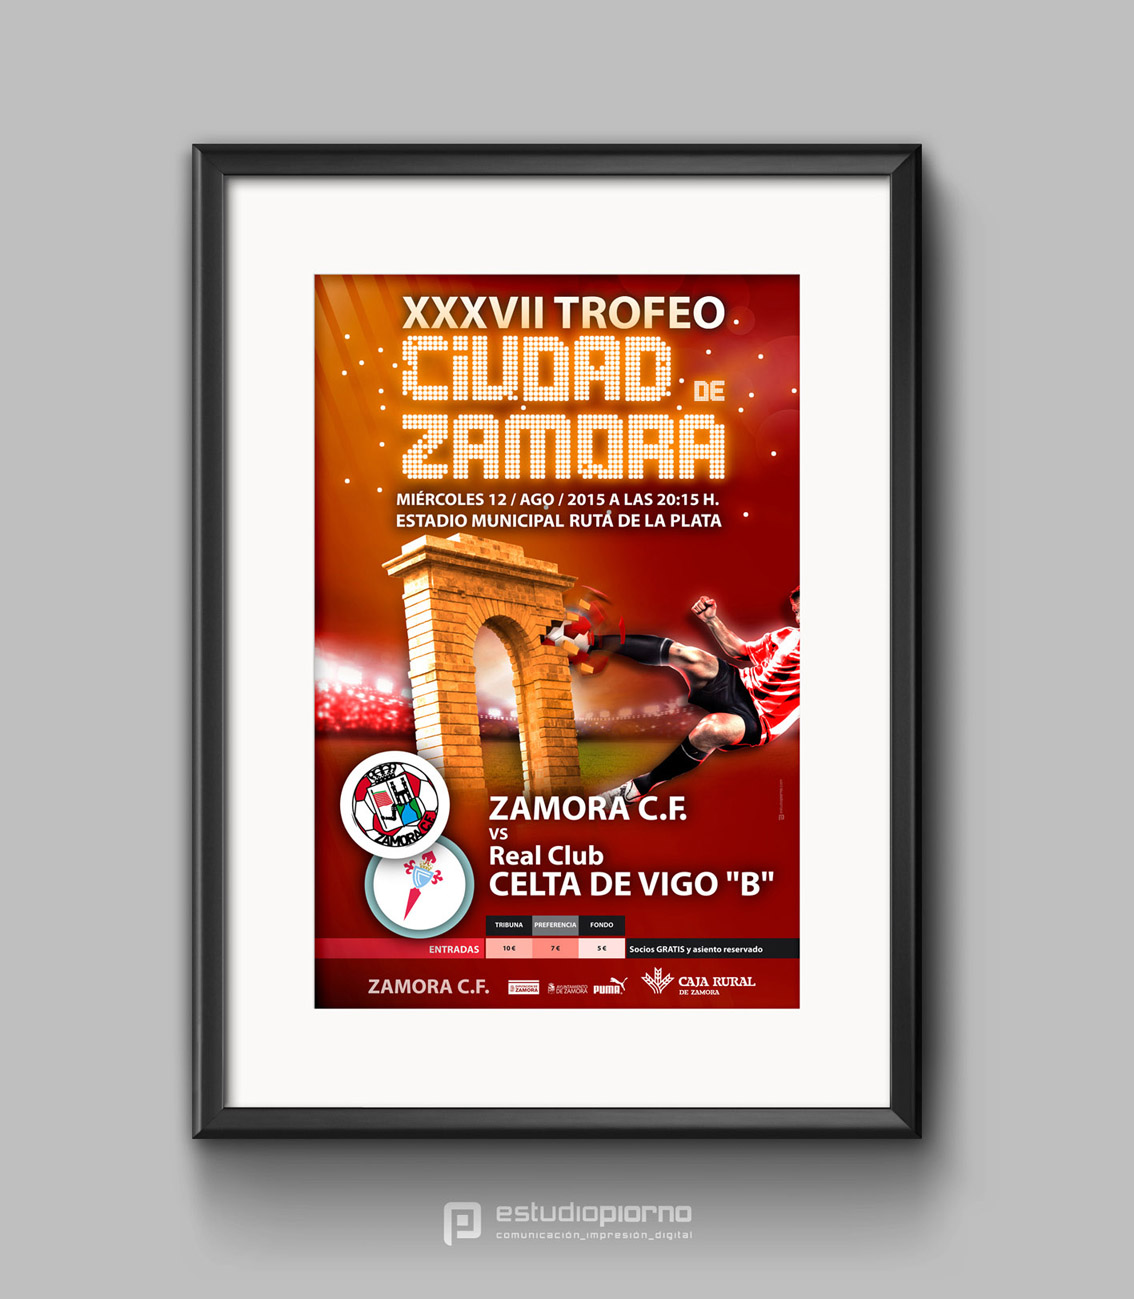 Poster-Frame_zamora_trofeo